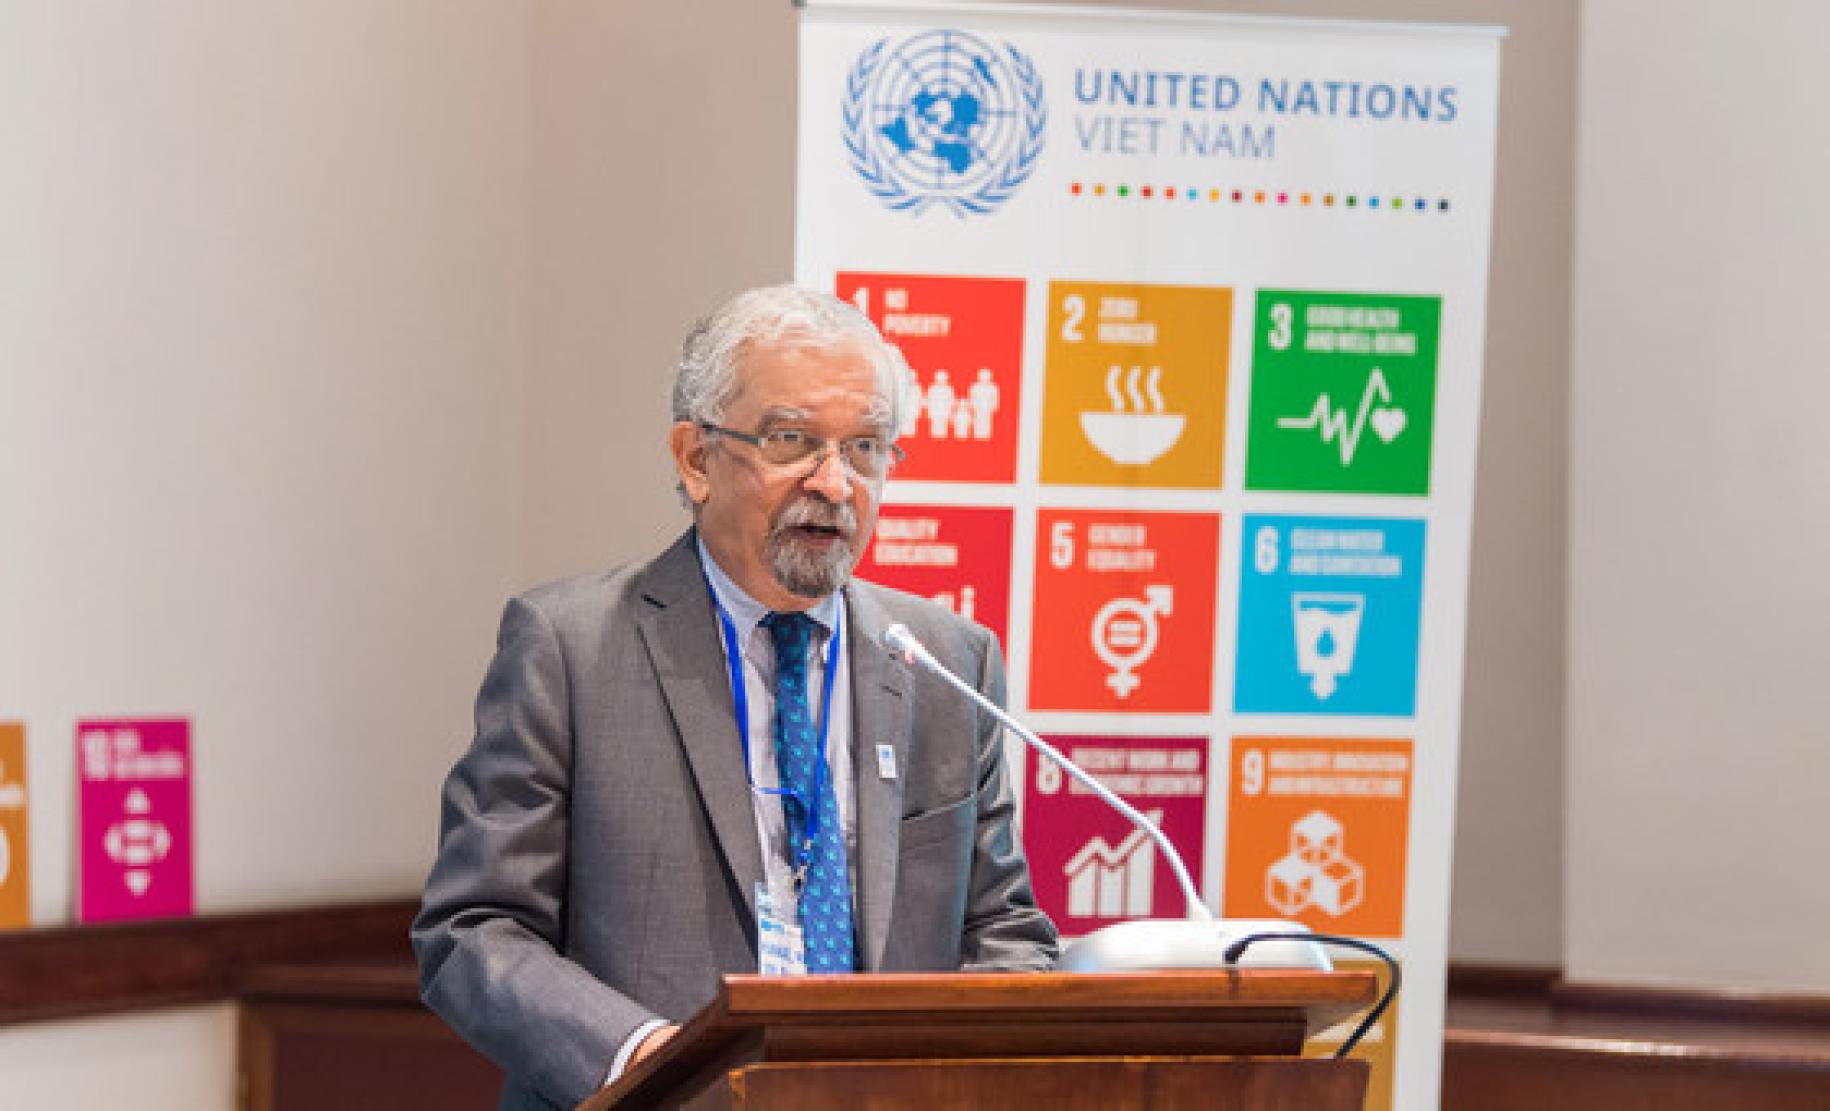 يظهر كمال مالهوترا المنسق المقيم للأمم المتحدة في فييت نام وهو يتحدث على منصة.